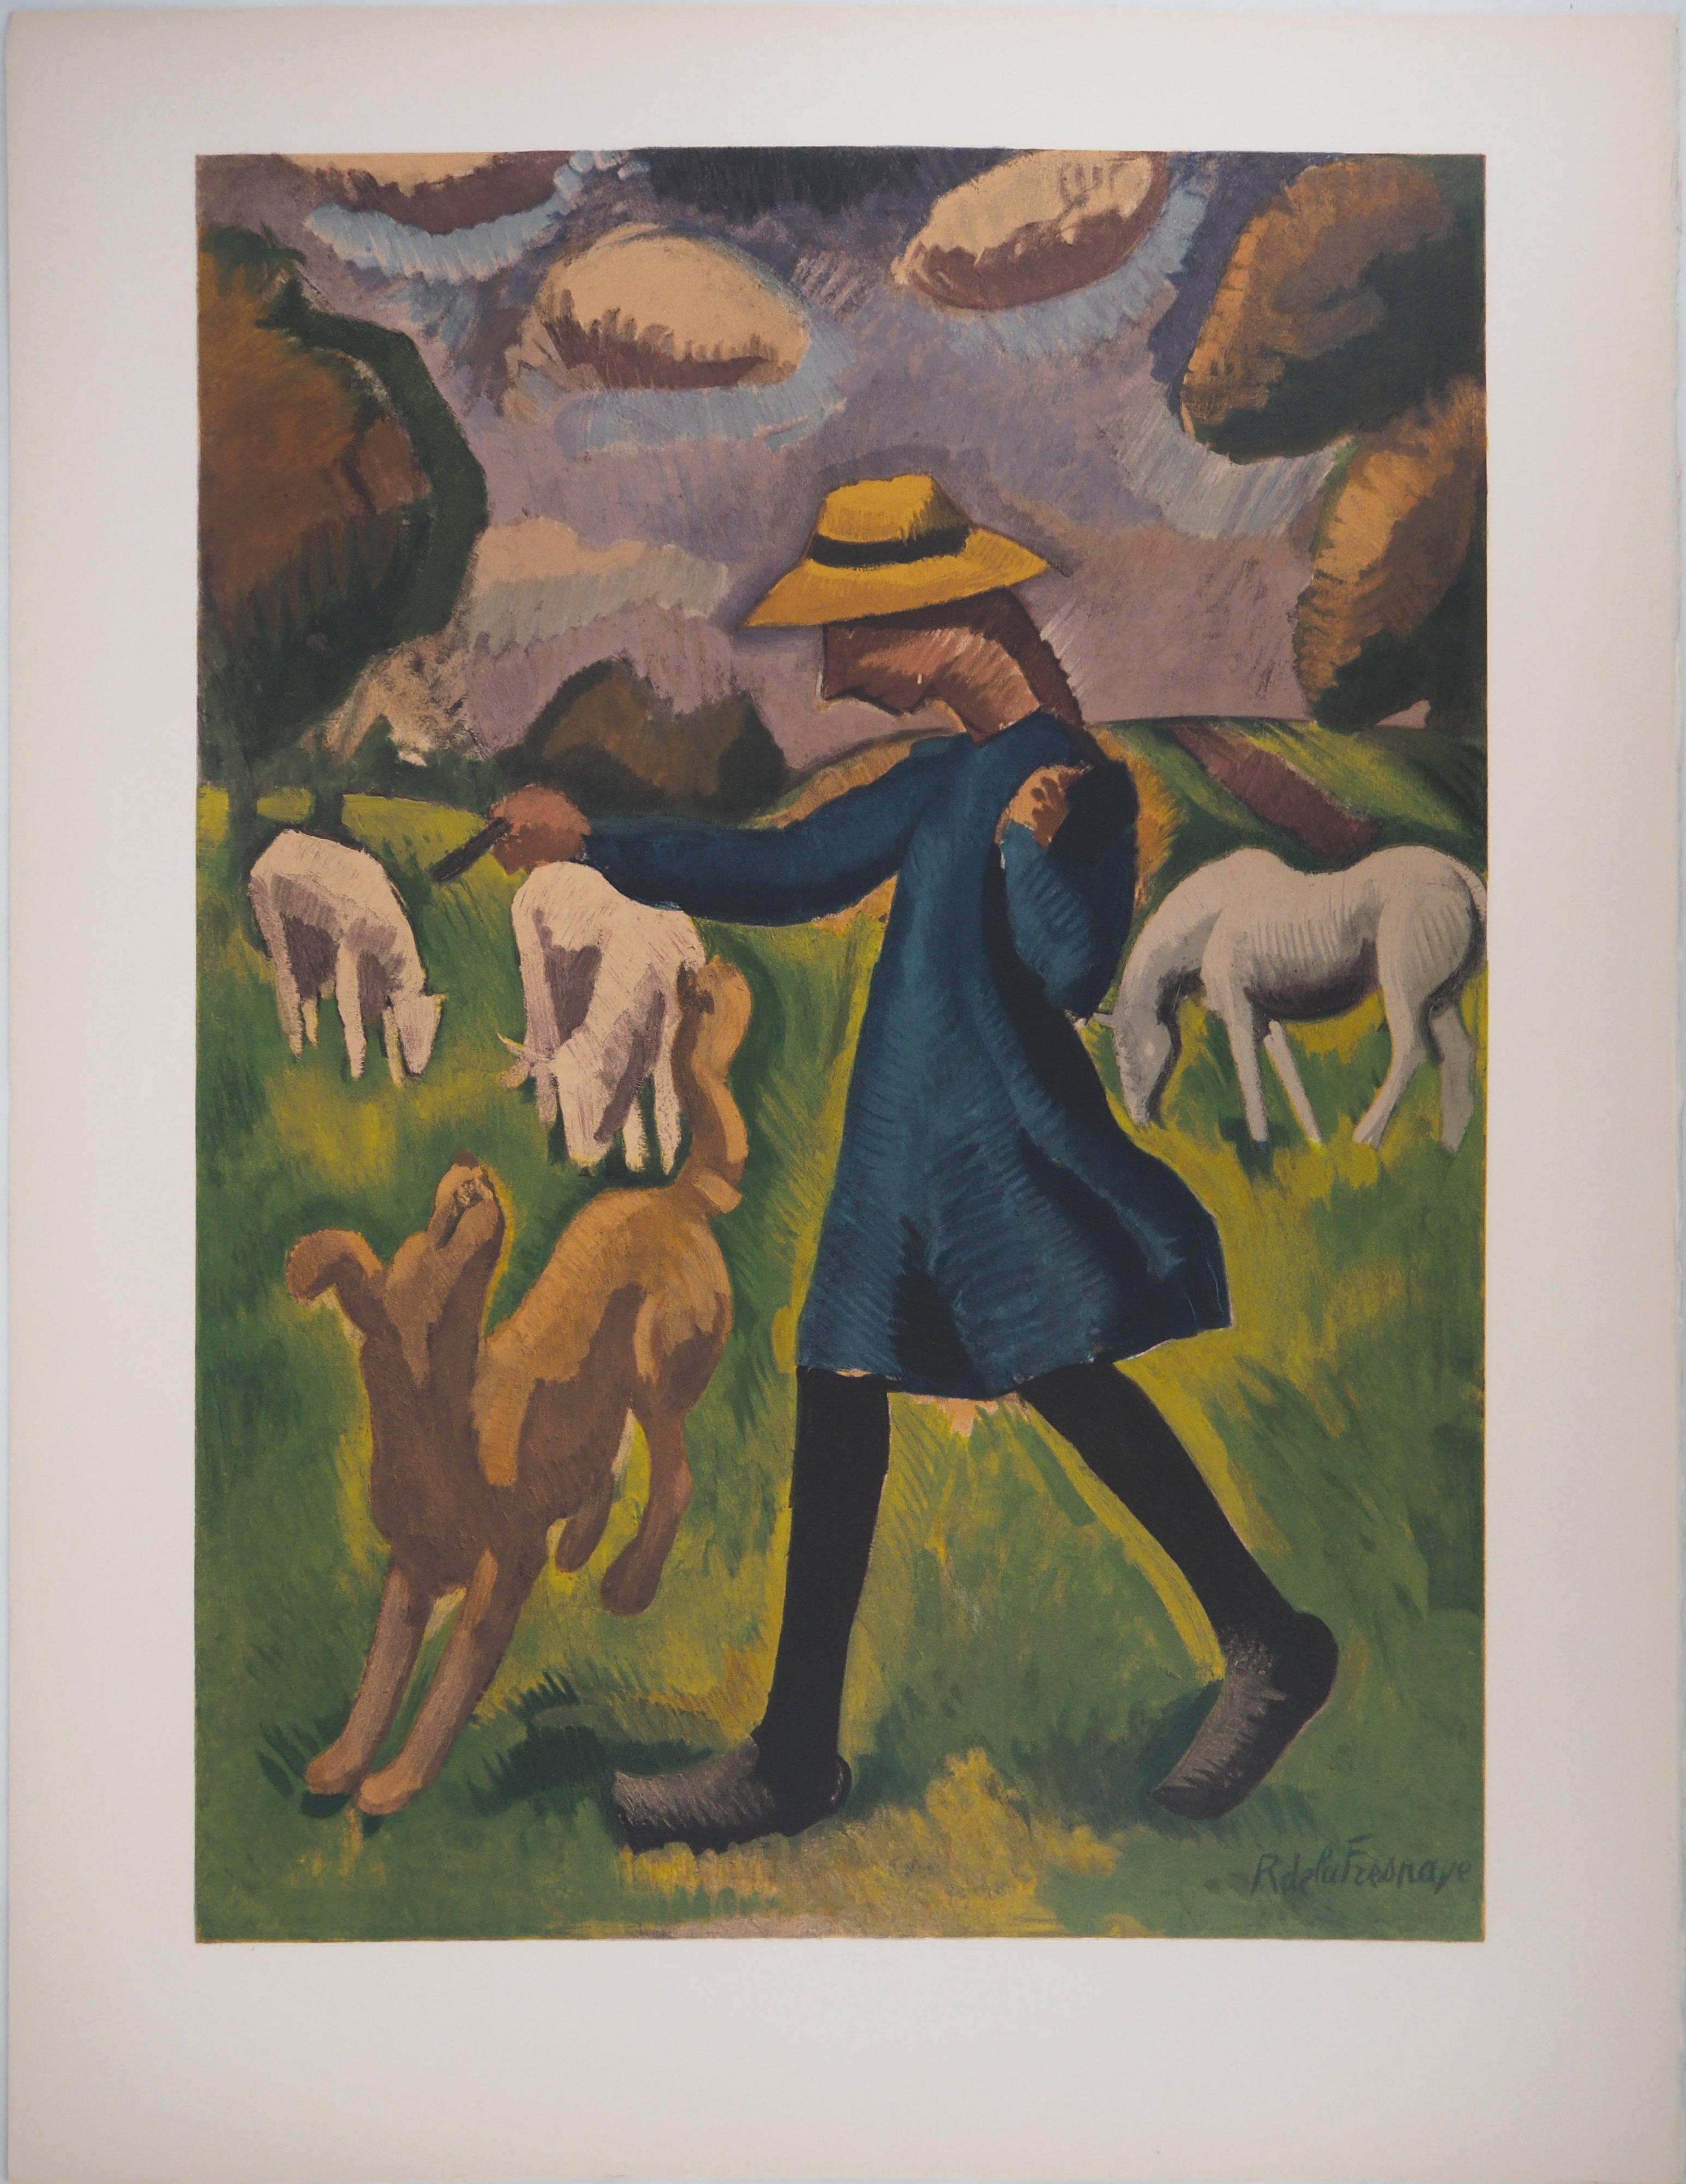 Countryside: Mädchen beim Spielen mit einem Hund – Lithographie, Mourlot (Moderne), Print, von Roger de la Fresnaye